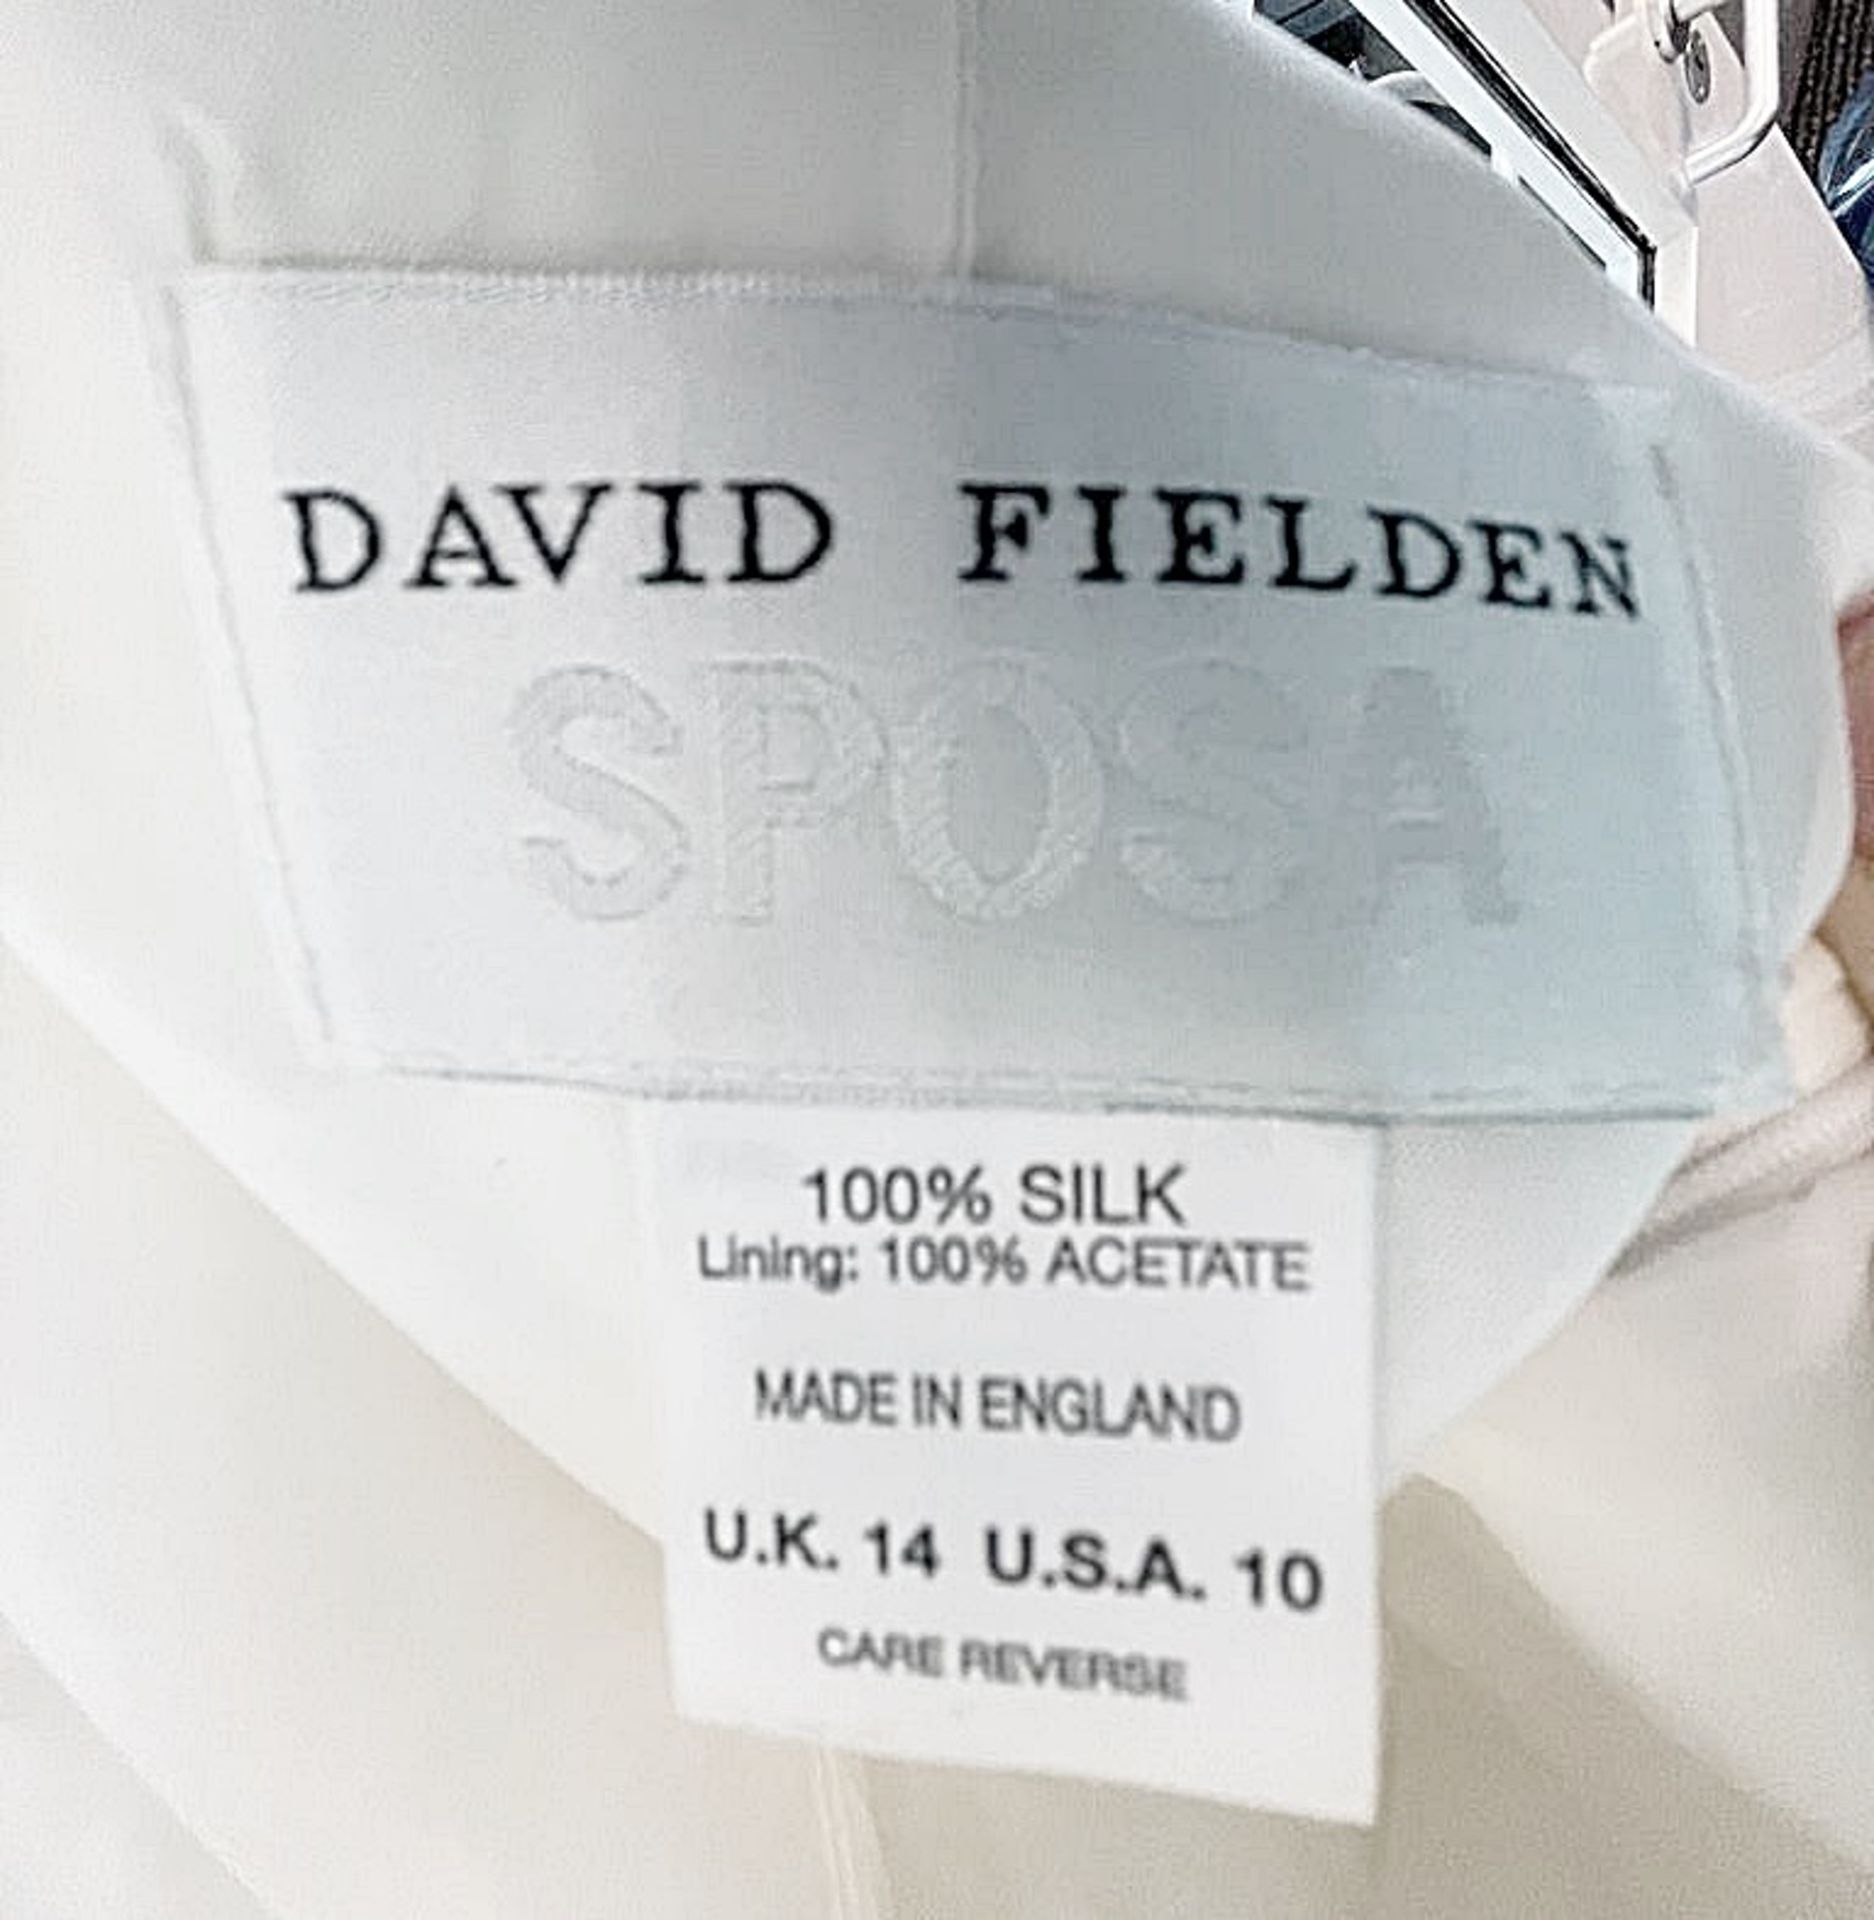 1 x DAVID FIELDEN Designer Silk Strapless Grecian-style Column Wedding Dress Bridal Gown, With - Image 6 of 8